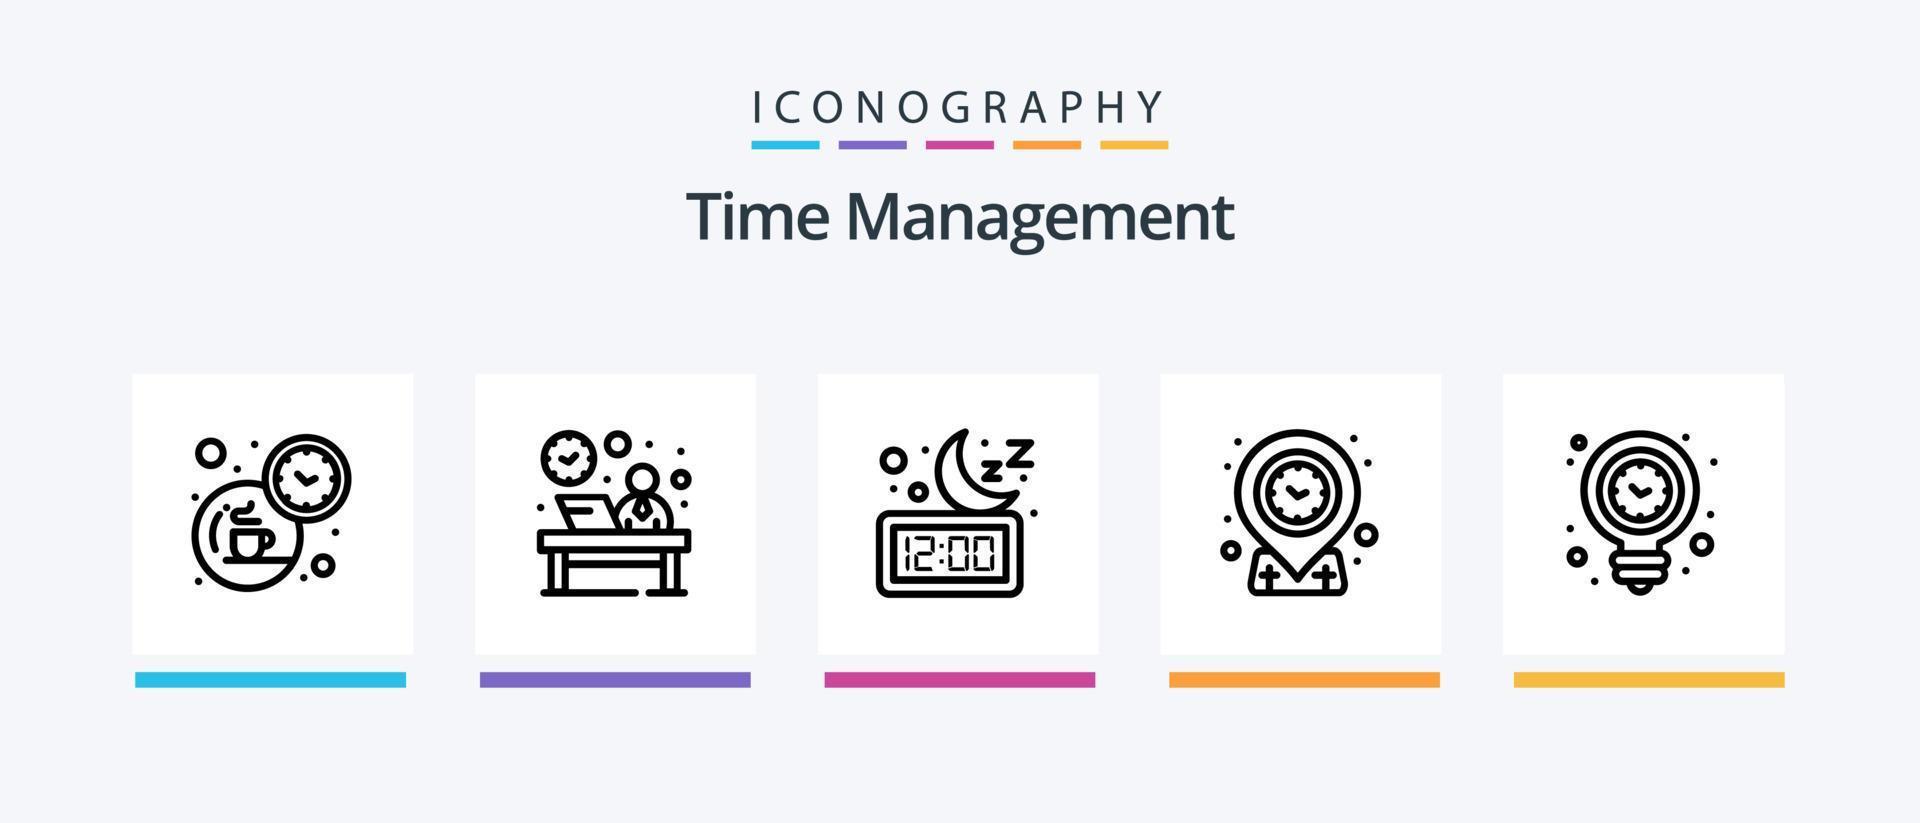 paquete de iconos de la línea 5 de gestión del tiempo que incluye bolsa. reloj de pared. mirar. Temporizador. hora. diseño de iconos creativos vector